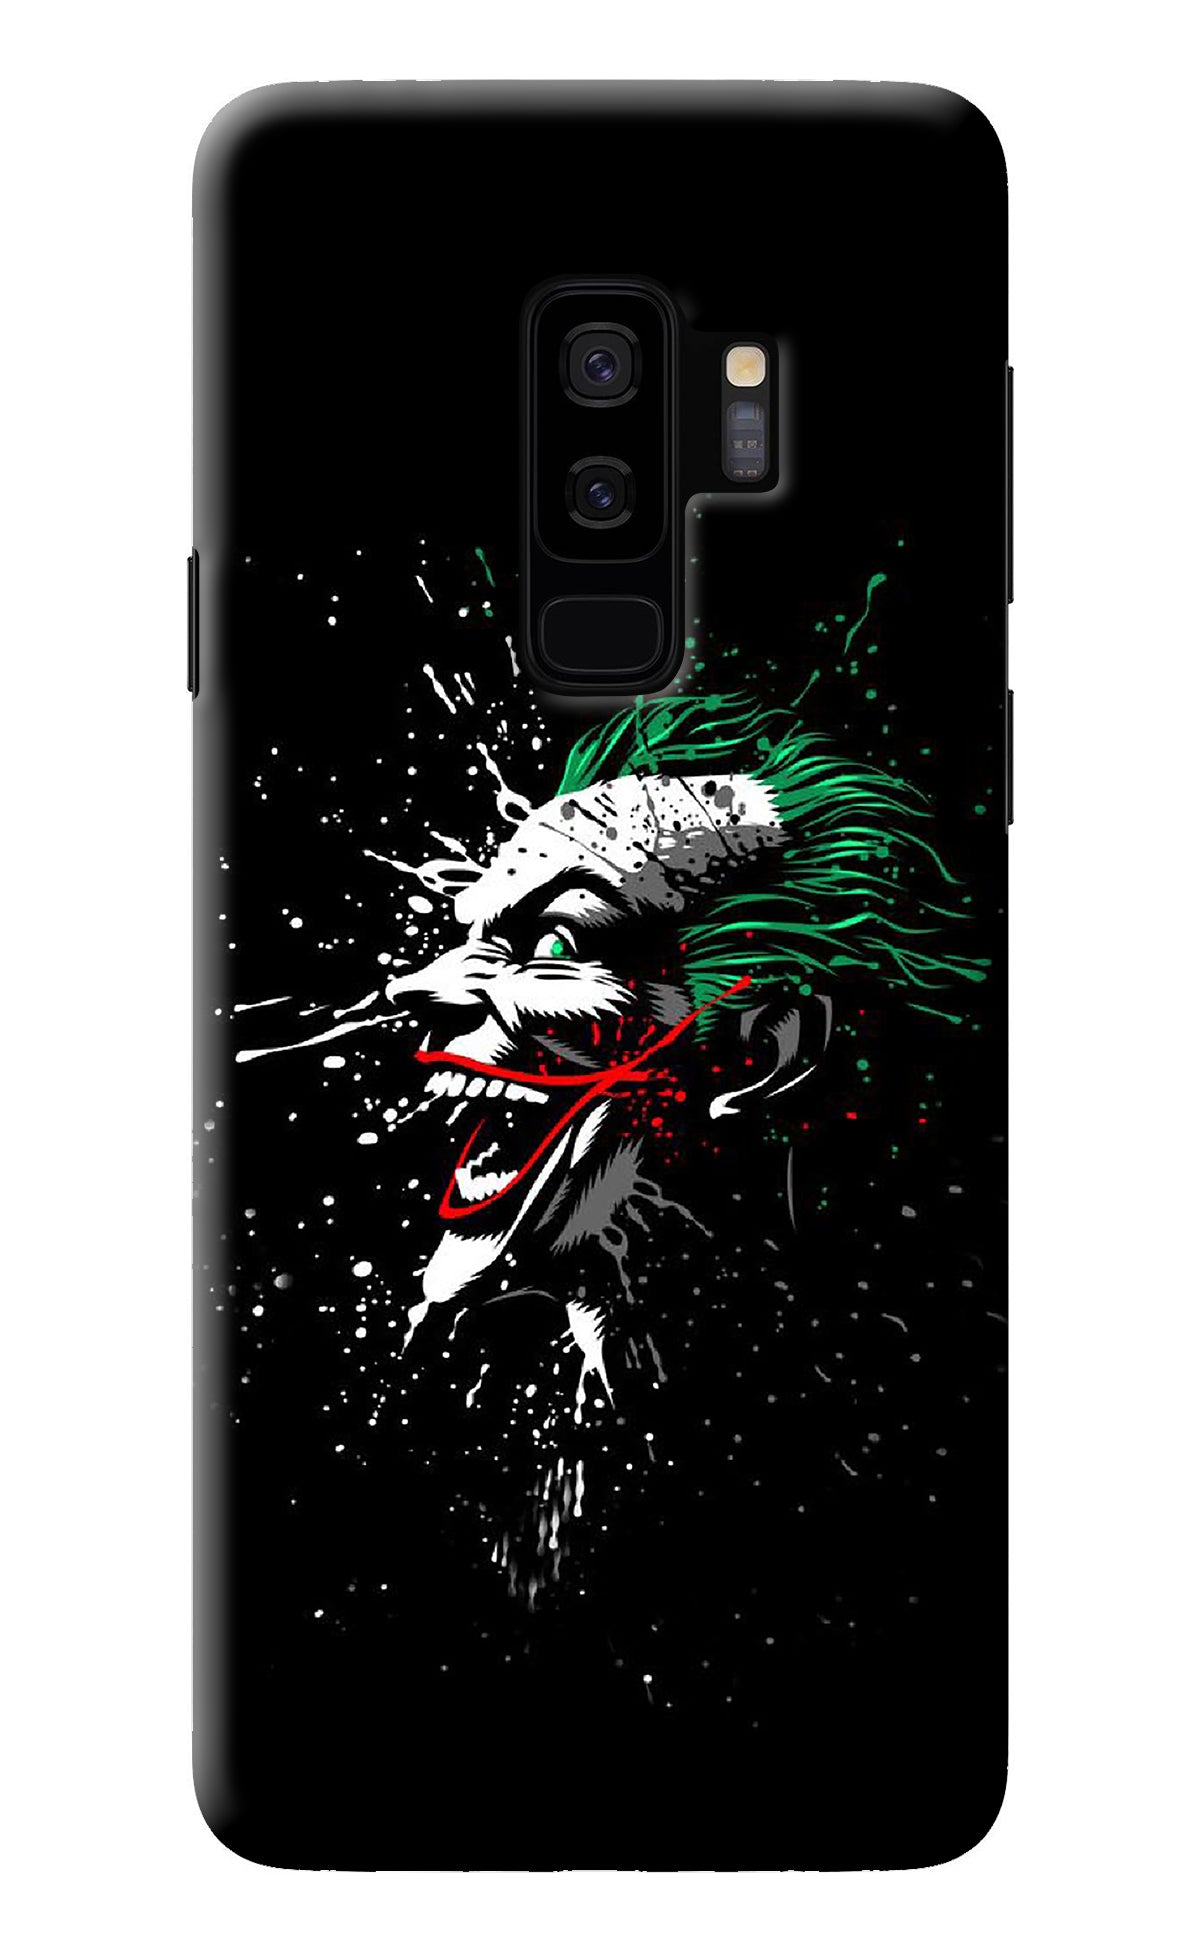 Joker Samsung S9 Plus Back Cover